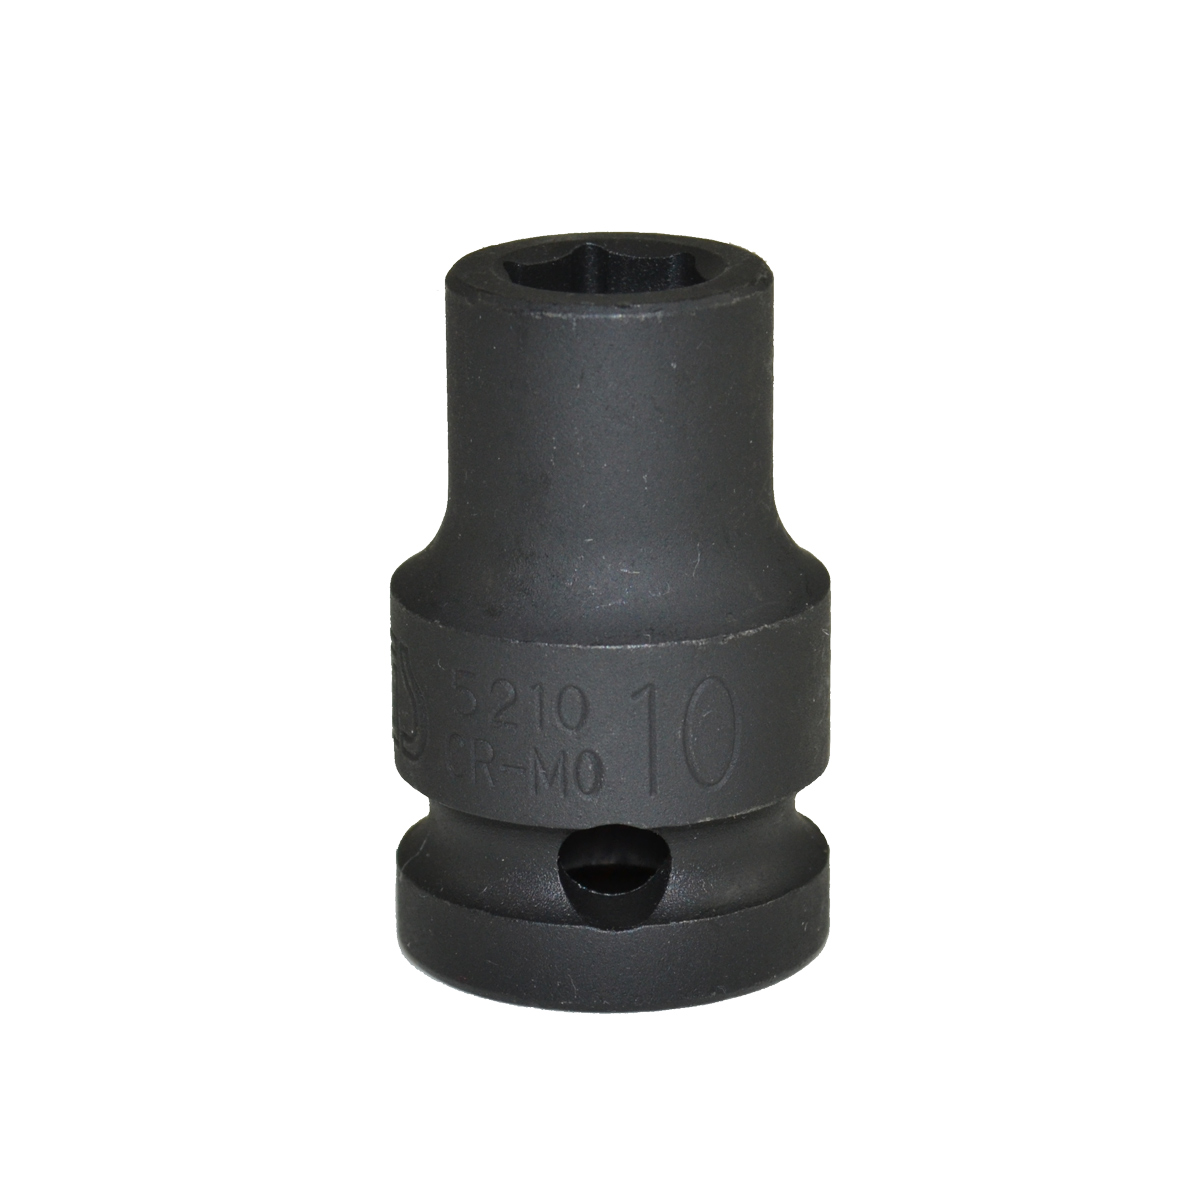 Impact wrench socket 10mm suitable for ValFix Size: Schlagschraubernuss 1/2 Zoll 10mm passend für ValFix